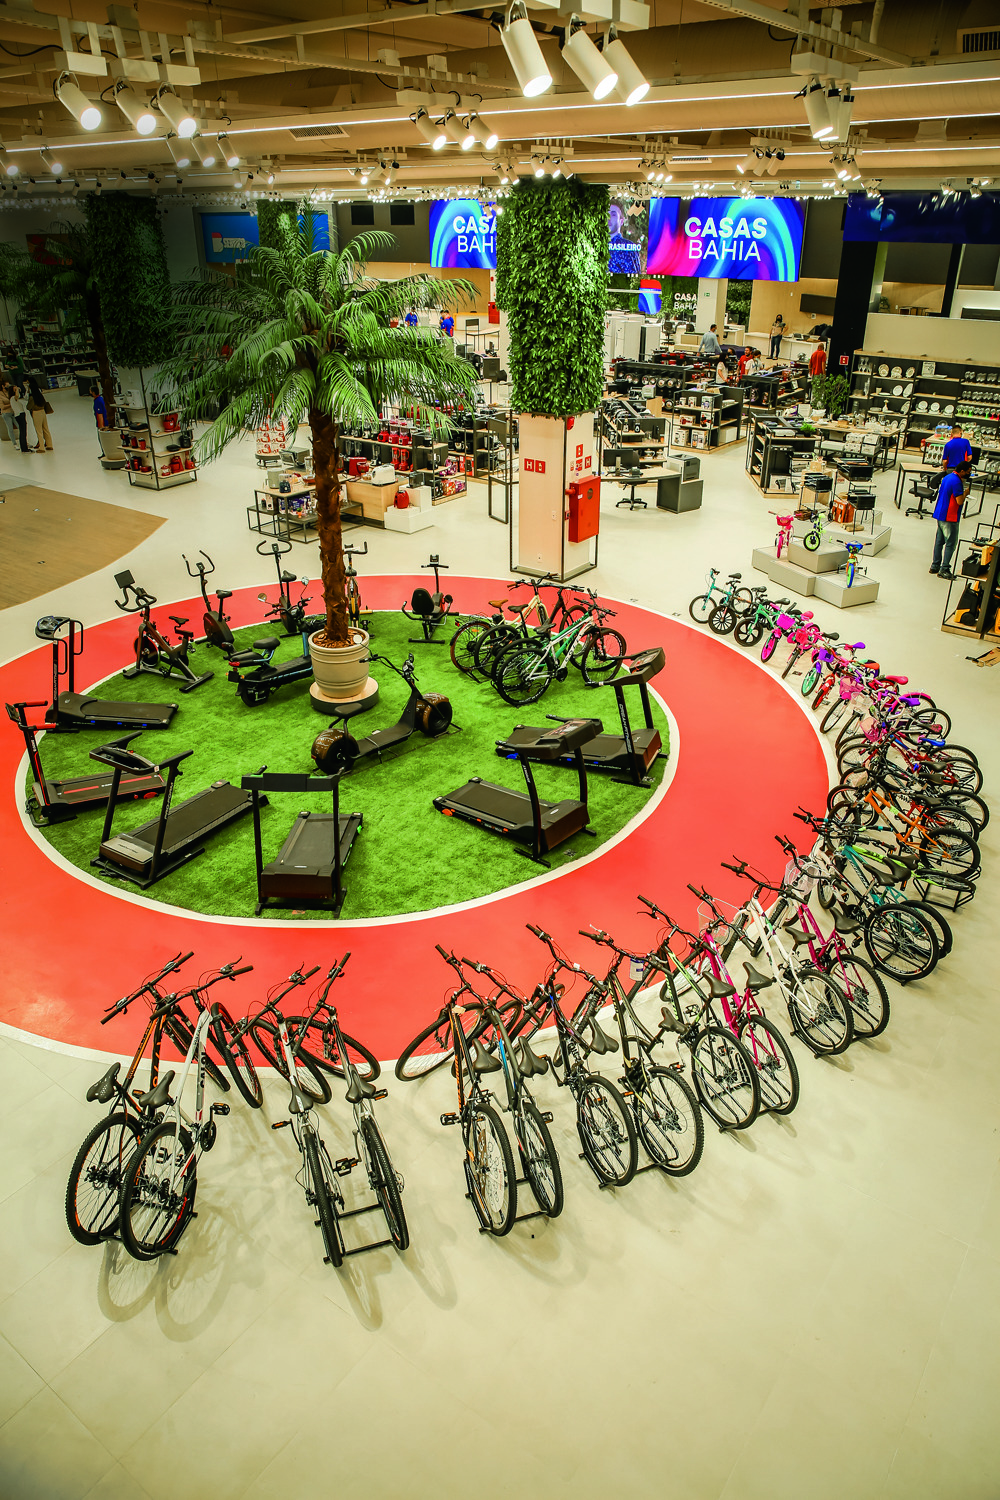 Foto tirada de um plano alto, mostra um gramado sintético em formato circular, rodeado por uma pista de corrida vermelha e por inúmeras bicicletas.